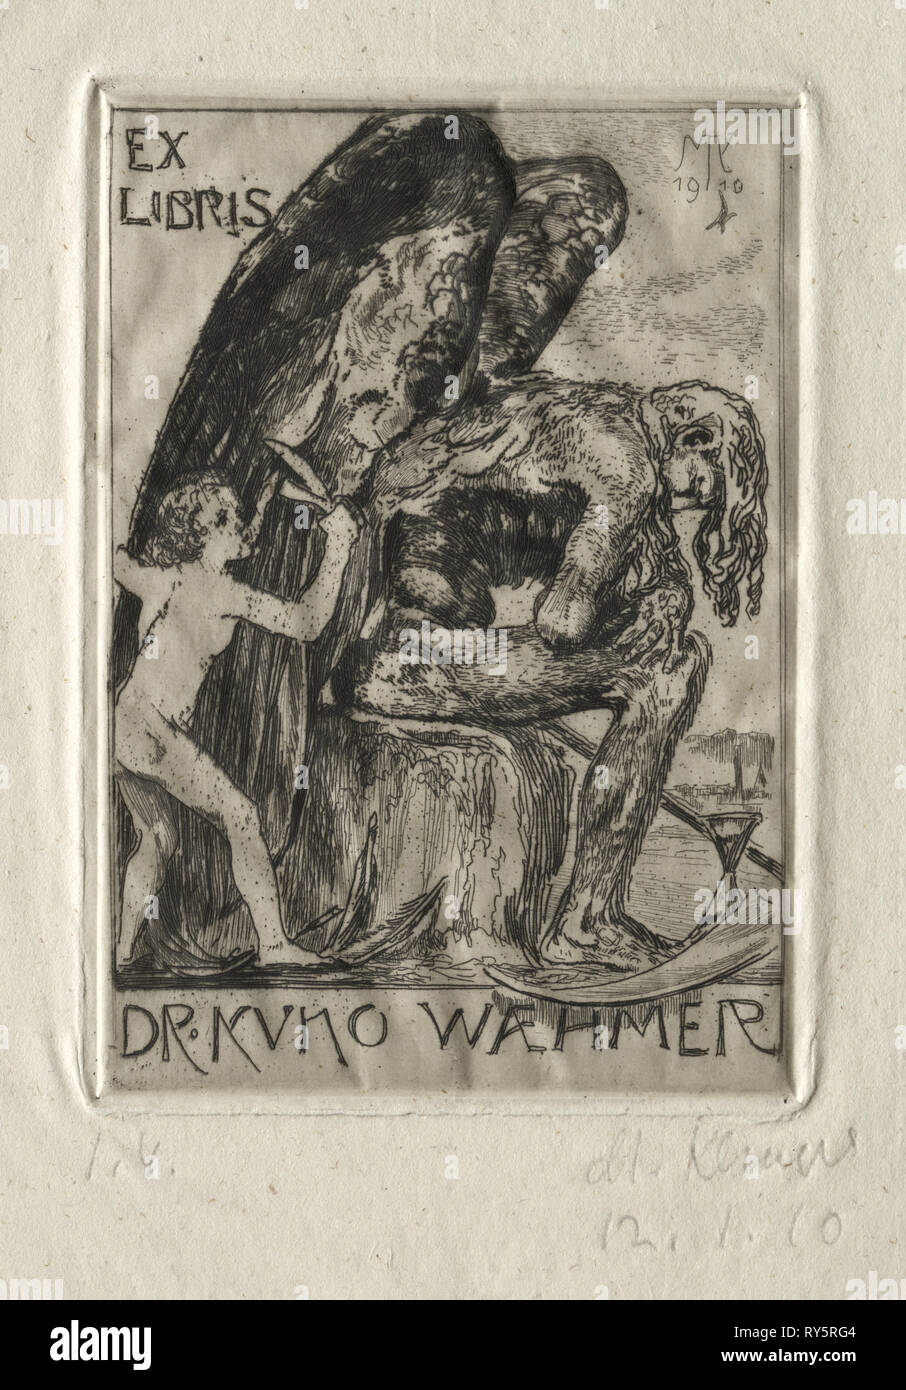 Ex Libris Dr Kuno Waehmer, 1910. Max Klinger (allemand, 1857-1920). Eau-forte Banque D'Images